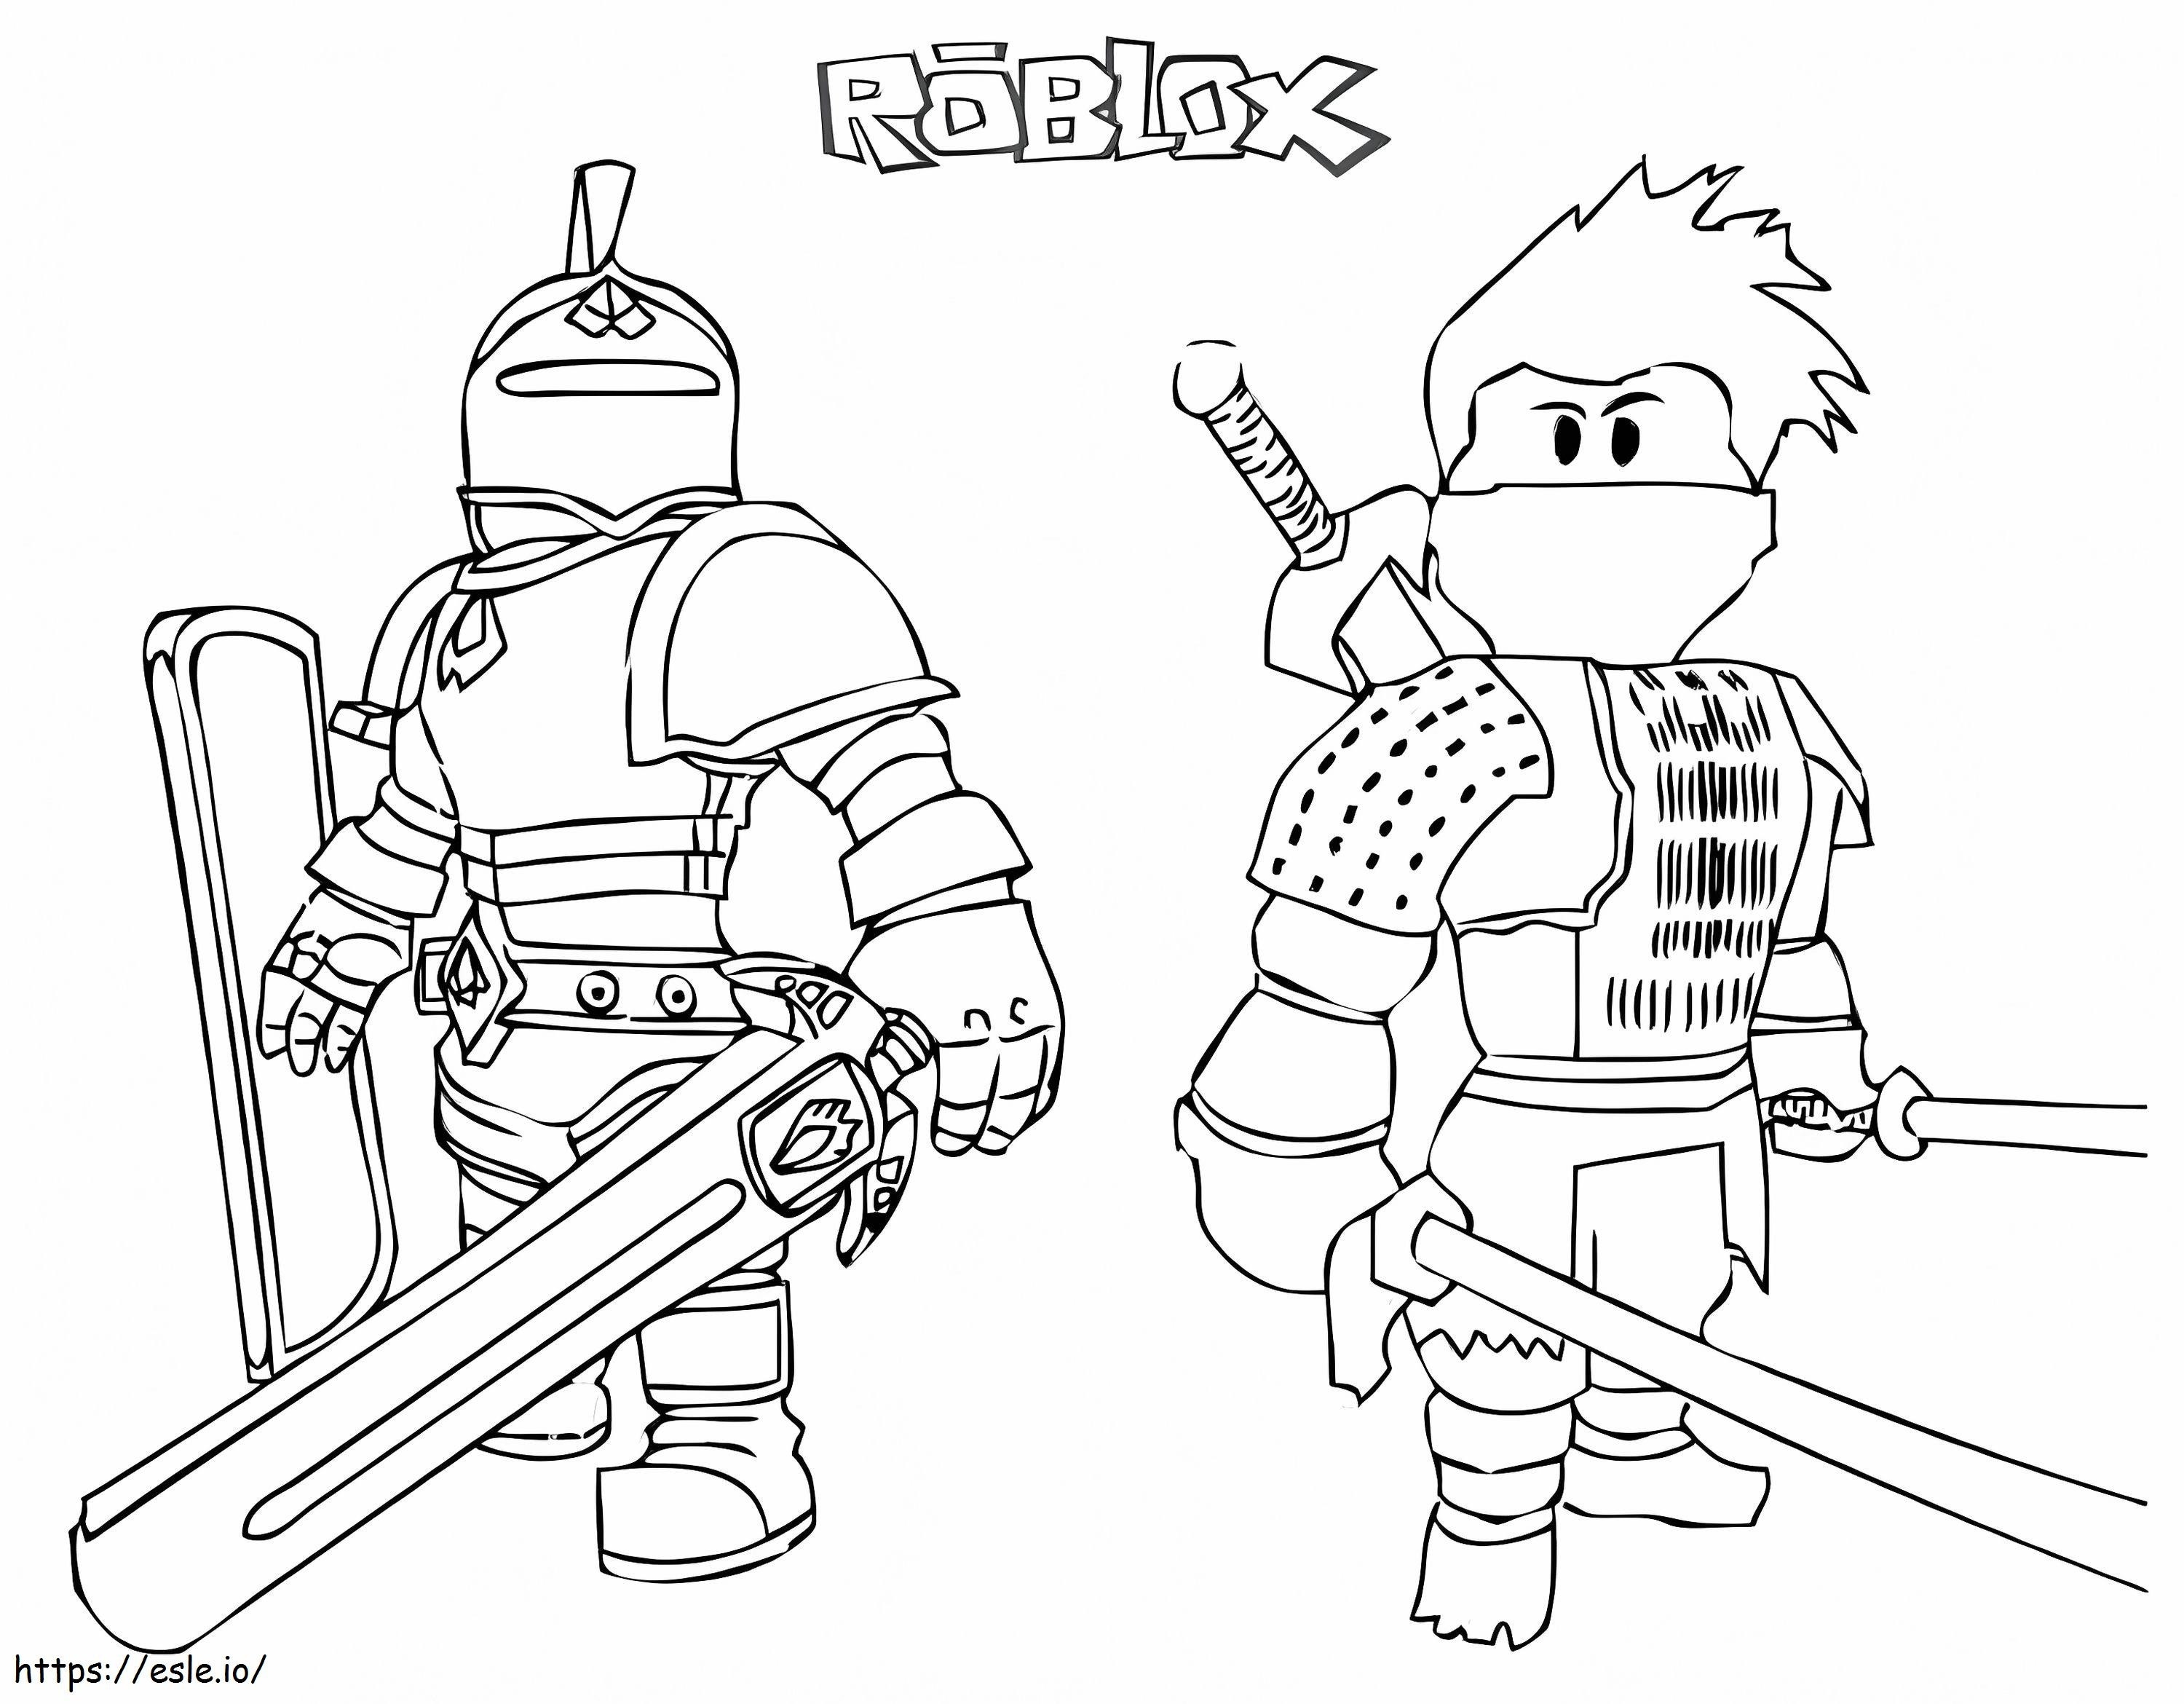 Roblox ridder en samoerai kleurplaat kleurplaat